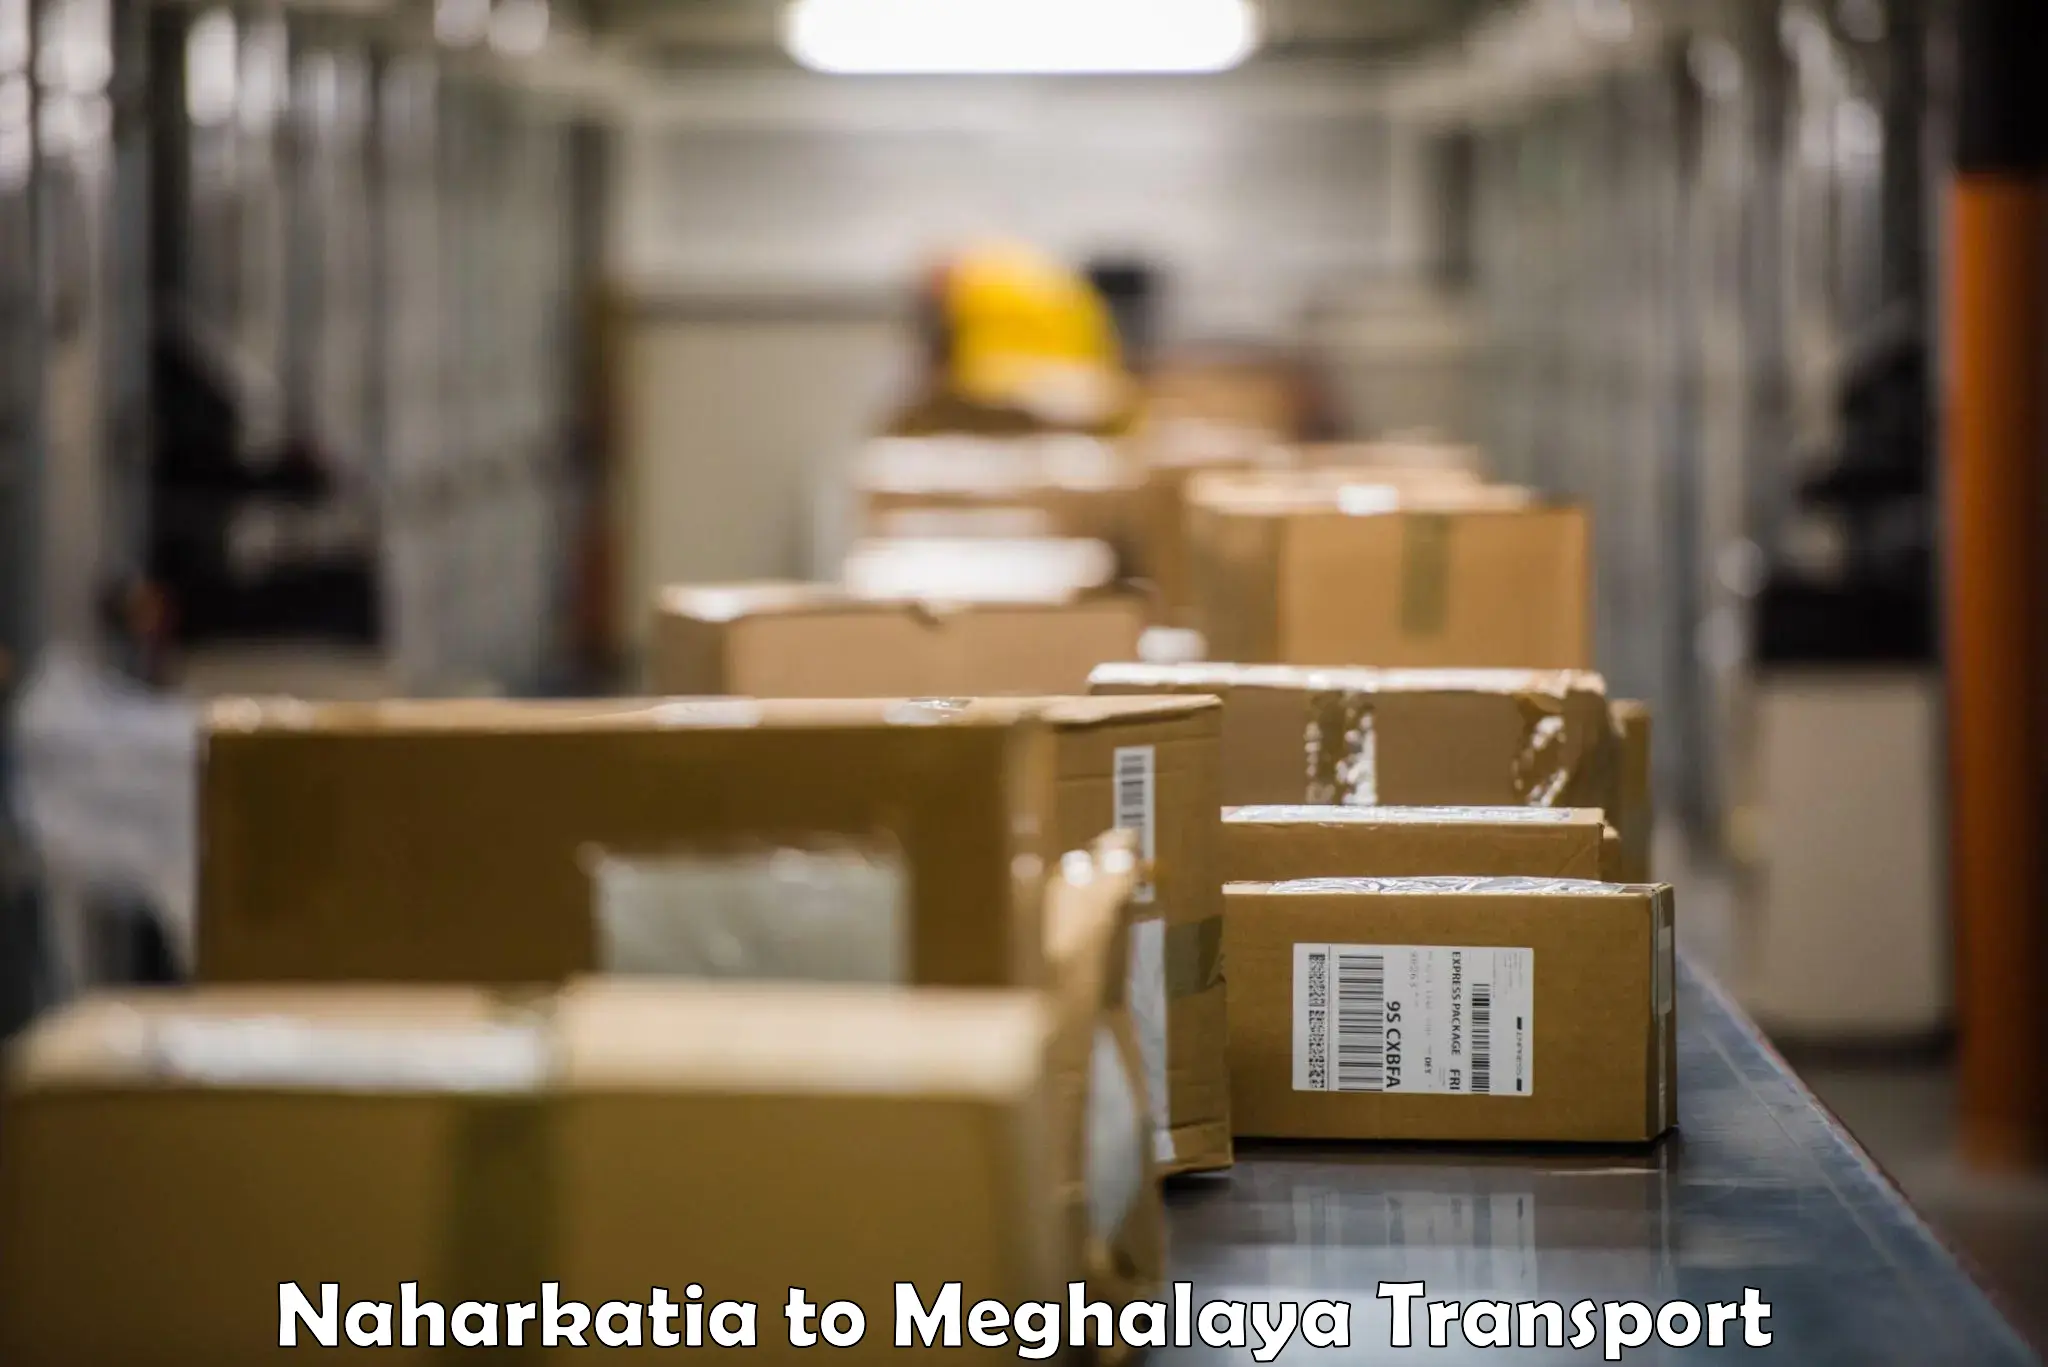 Container transport service Naharkatia to Meghalaya